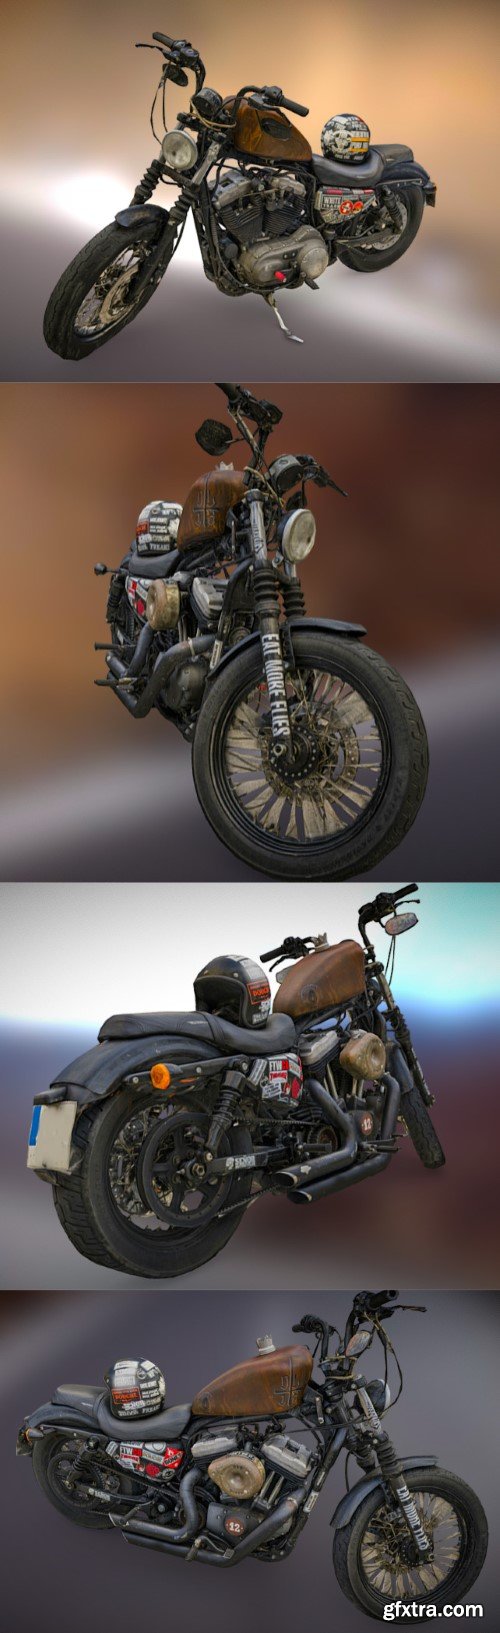 Señor MotorCycle Bike -Photogrammetry Scan